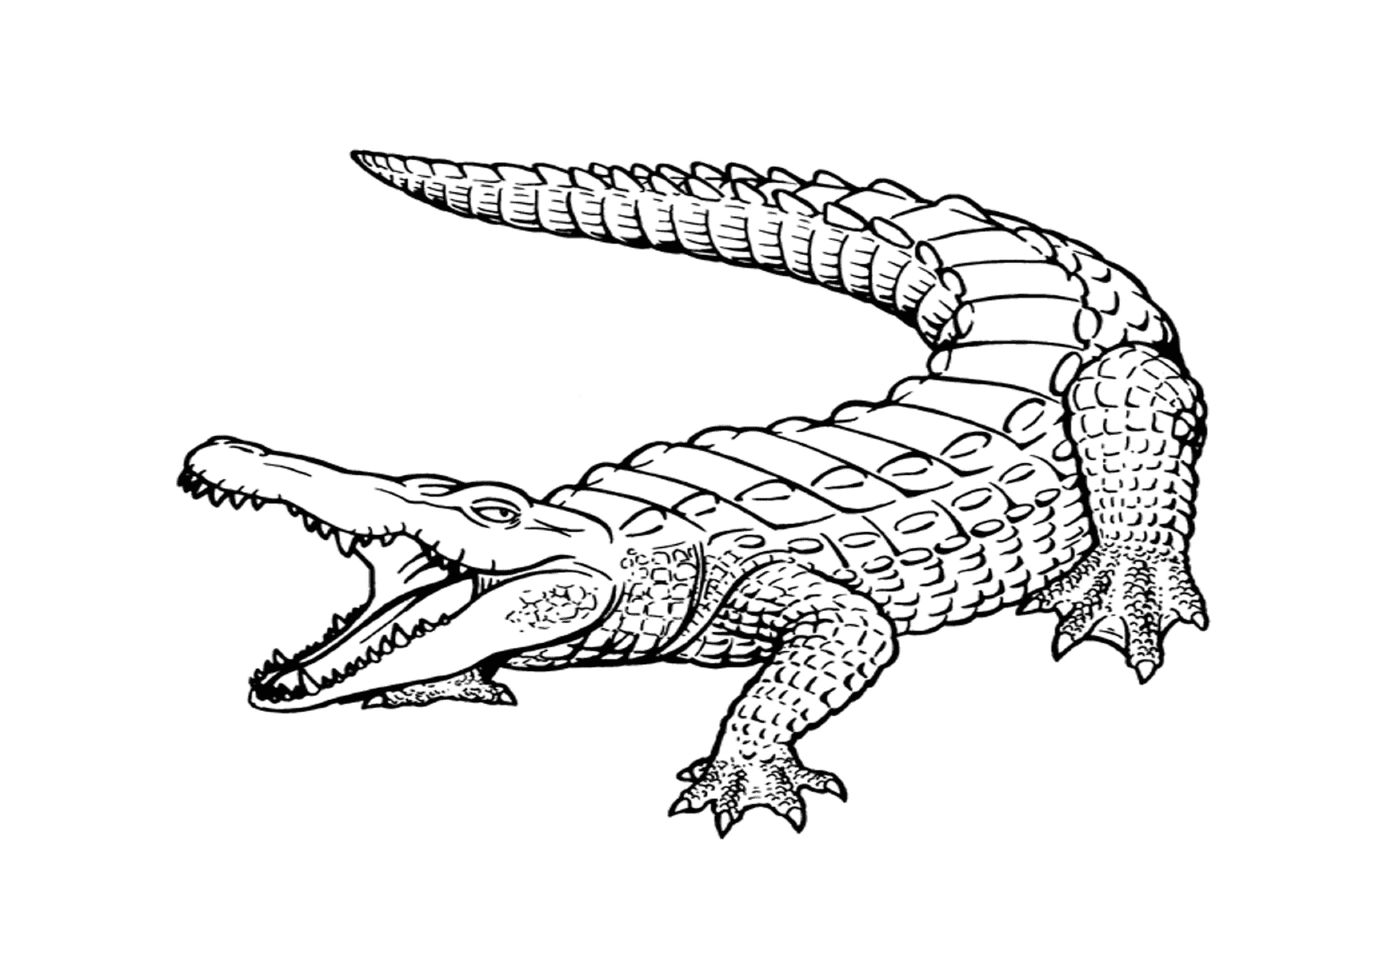   Un crocodile marin réaliste avec la gueule ouverte 